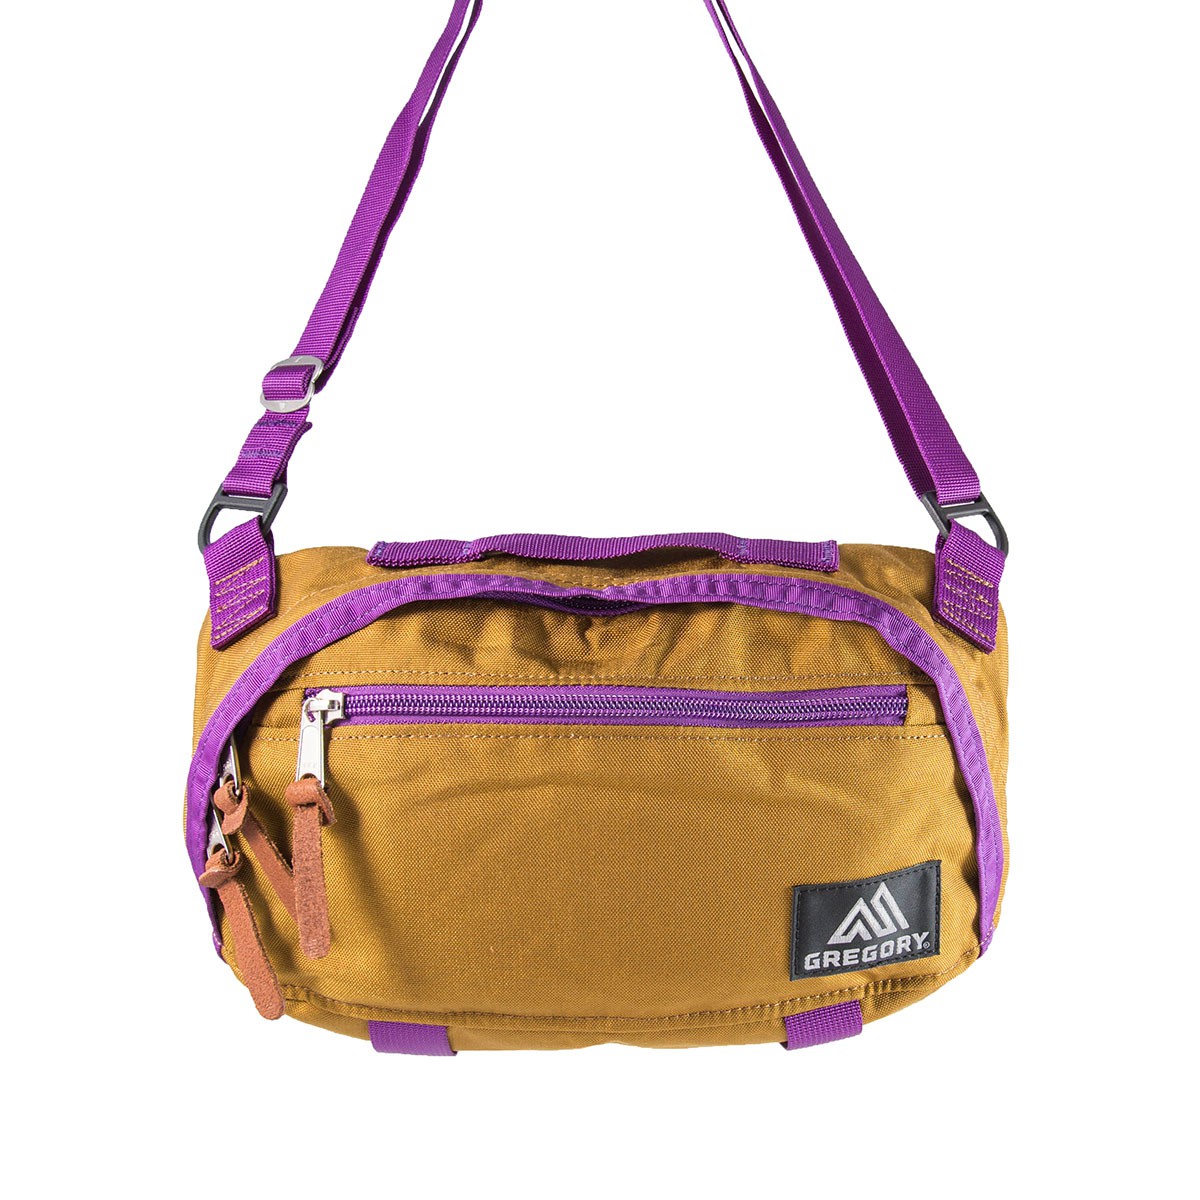 Gregory Transfer Shoulder Bag M Size 斜揹袋 Bronze Purple  香港行貨 *旺角店現貨*